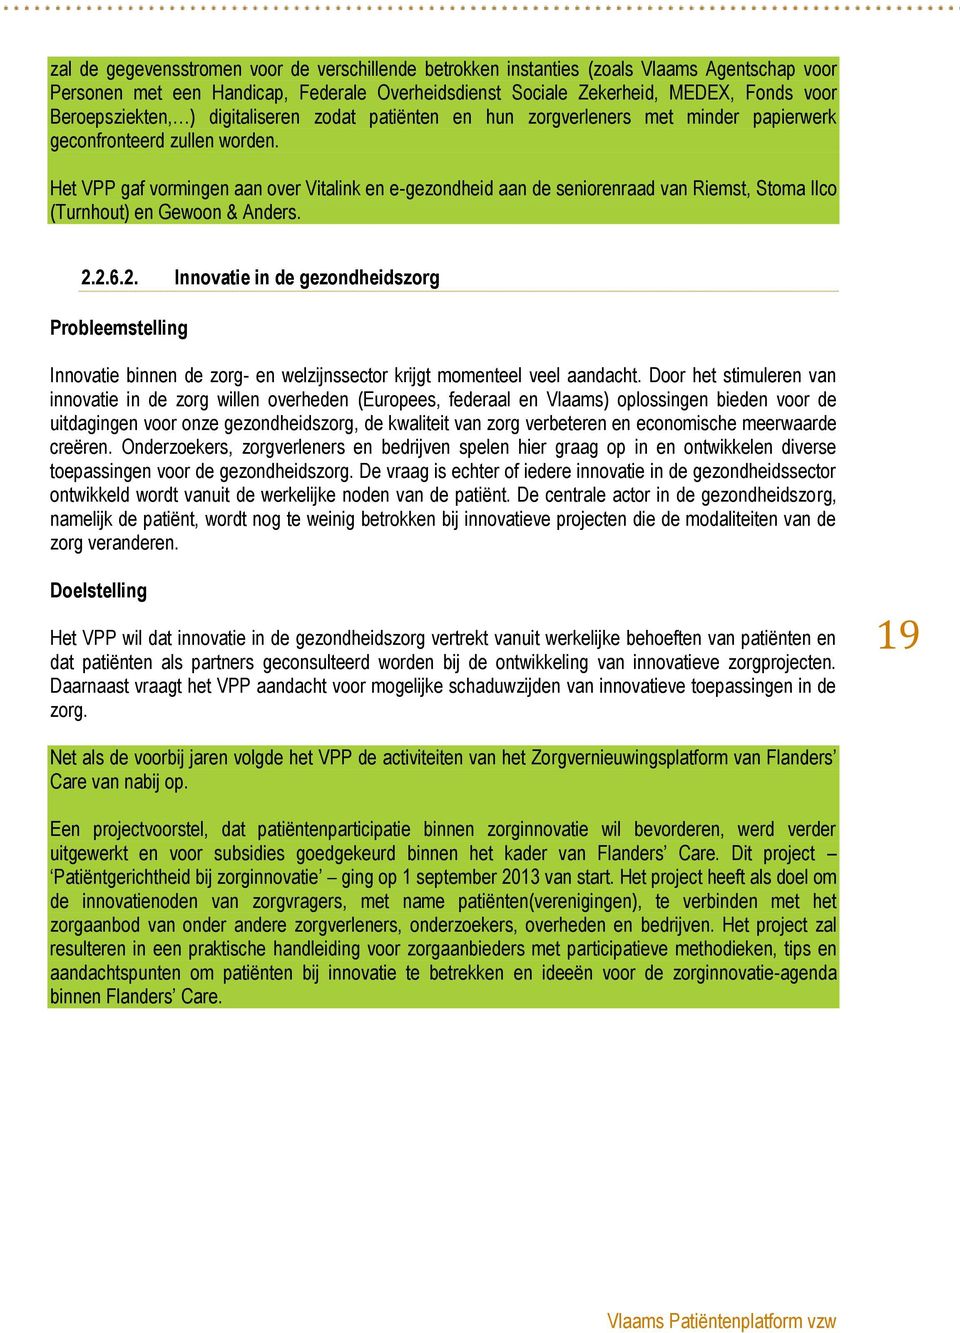 Het VPP gaf vormingen aan over Vitalink en e-gezondheid aan de seniorenraad van Riemst, Stoma Ilco (Turnhout) en Gewoon & Anders. 2.